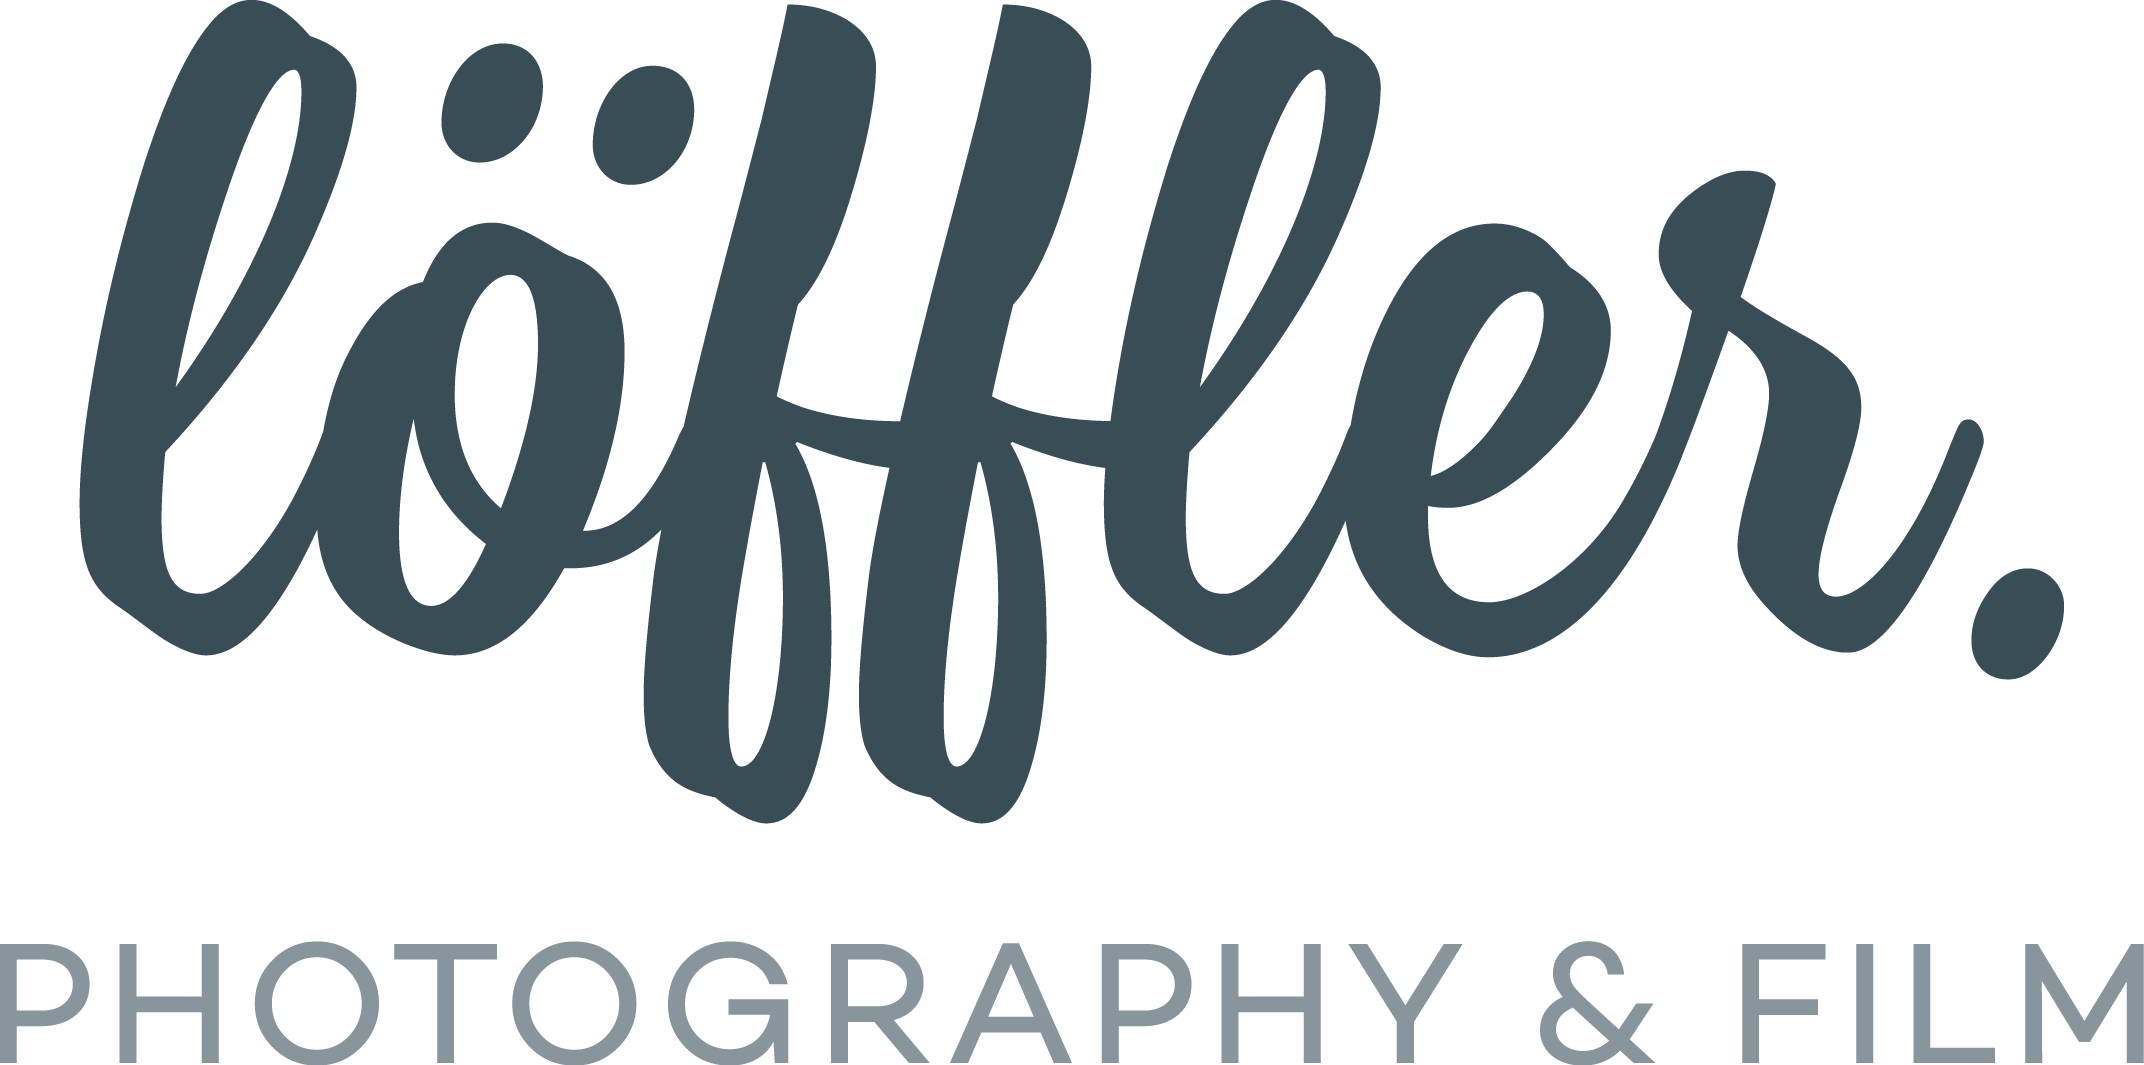 Löffler Photography & Film - Contentagentur & Filmproduktion aus Fulda und Frankfurt